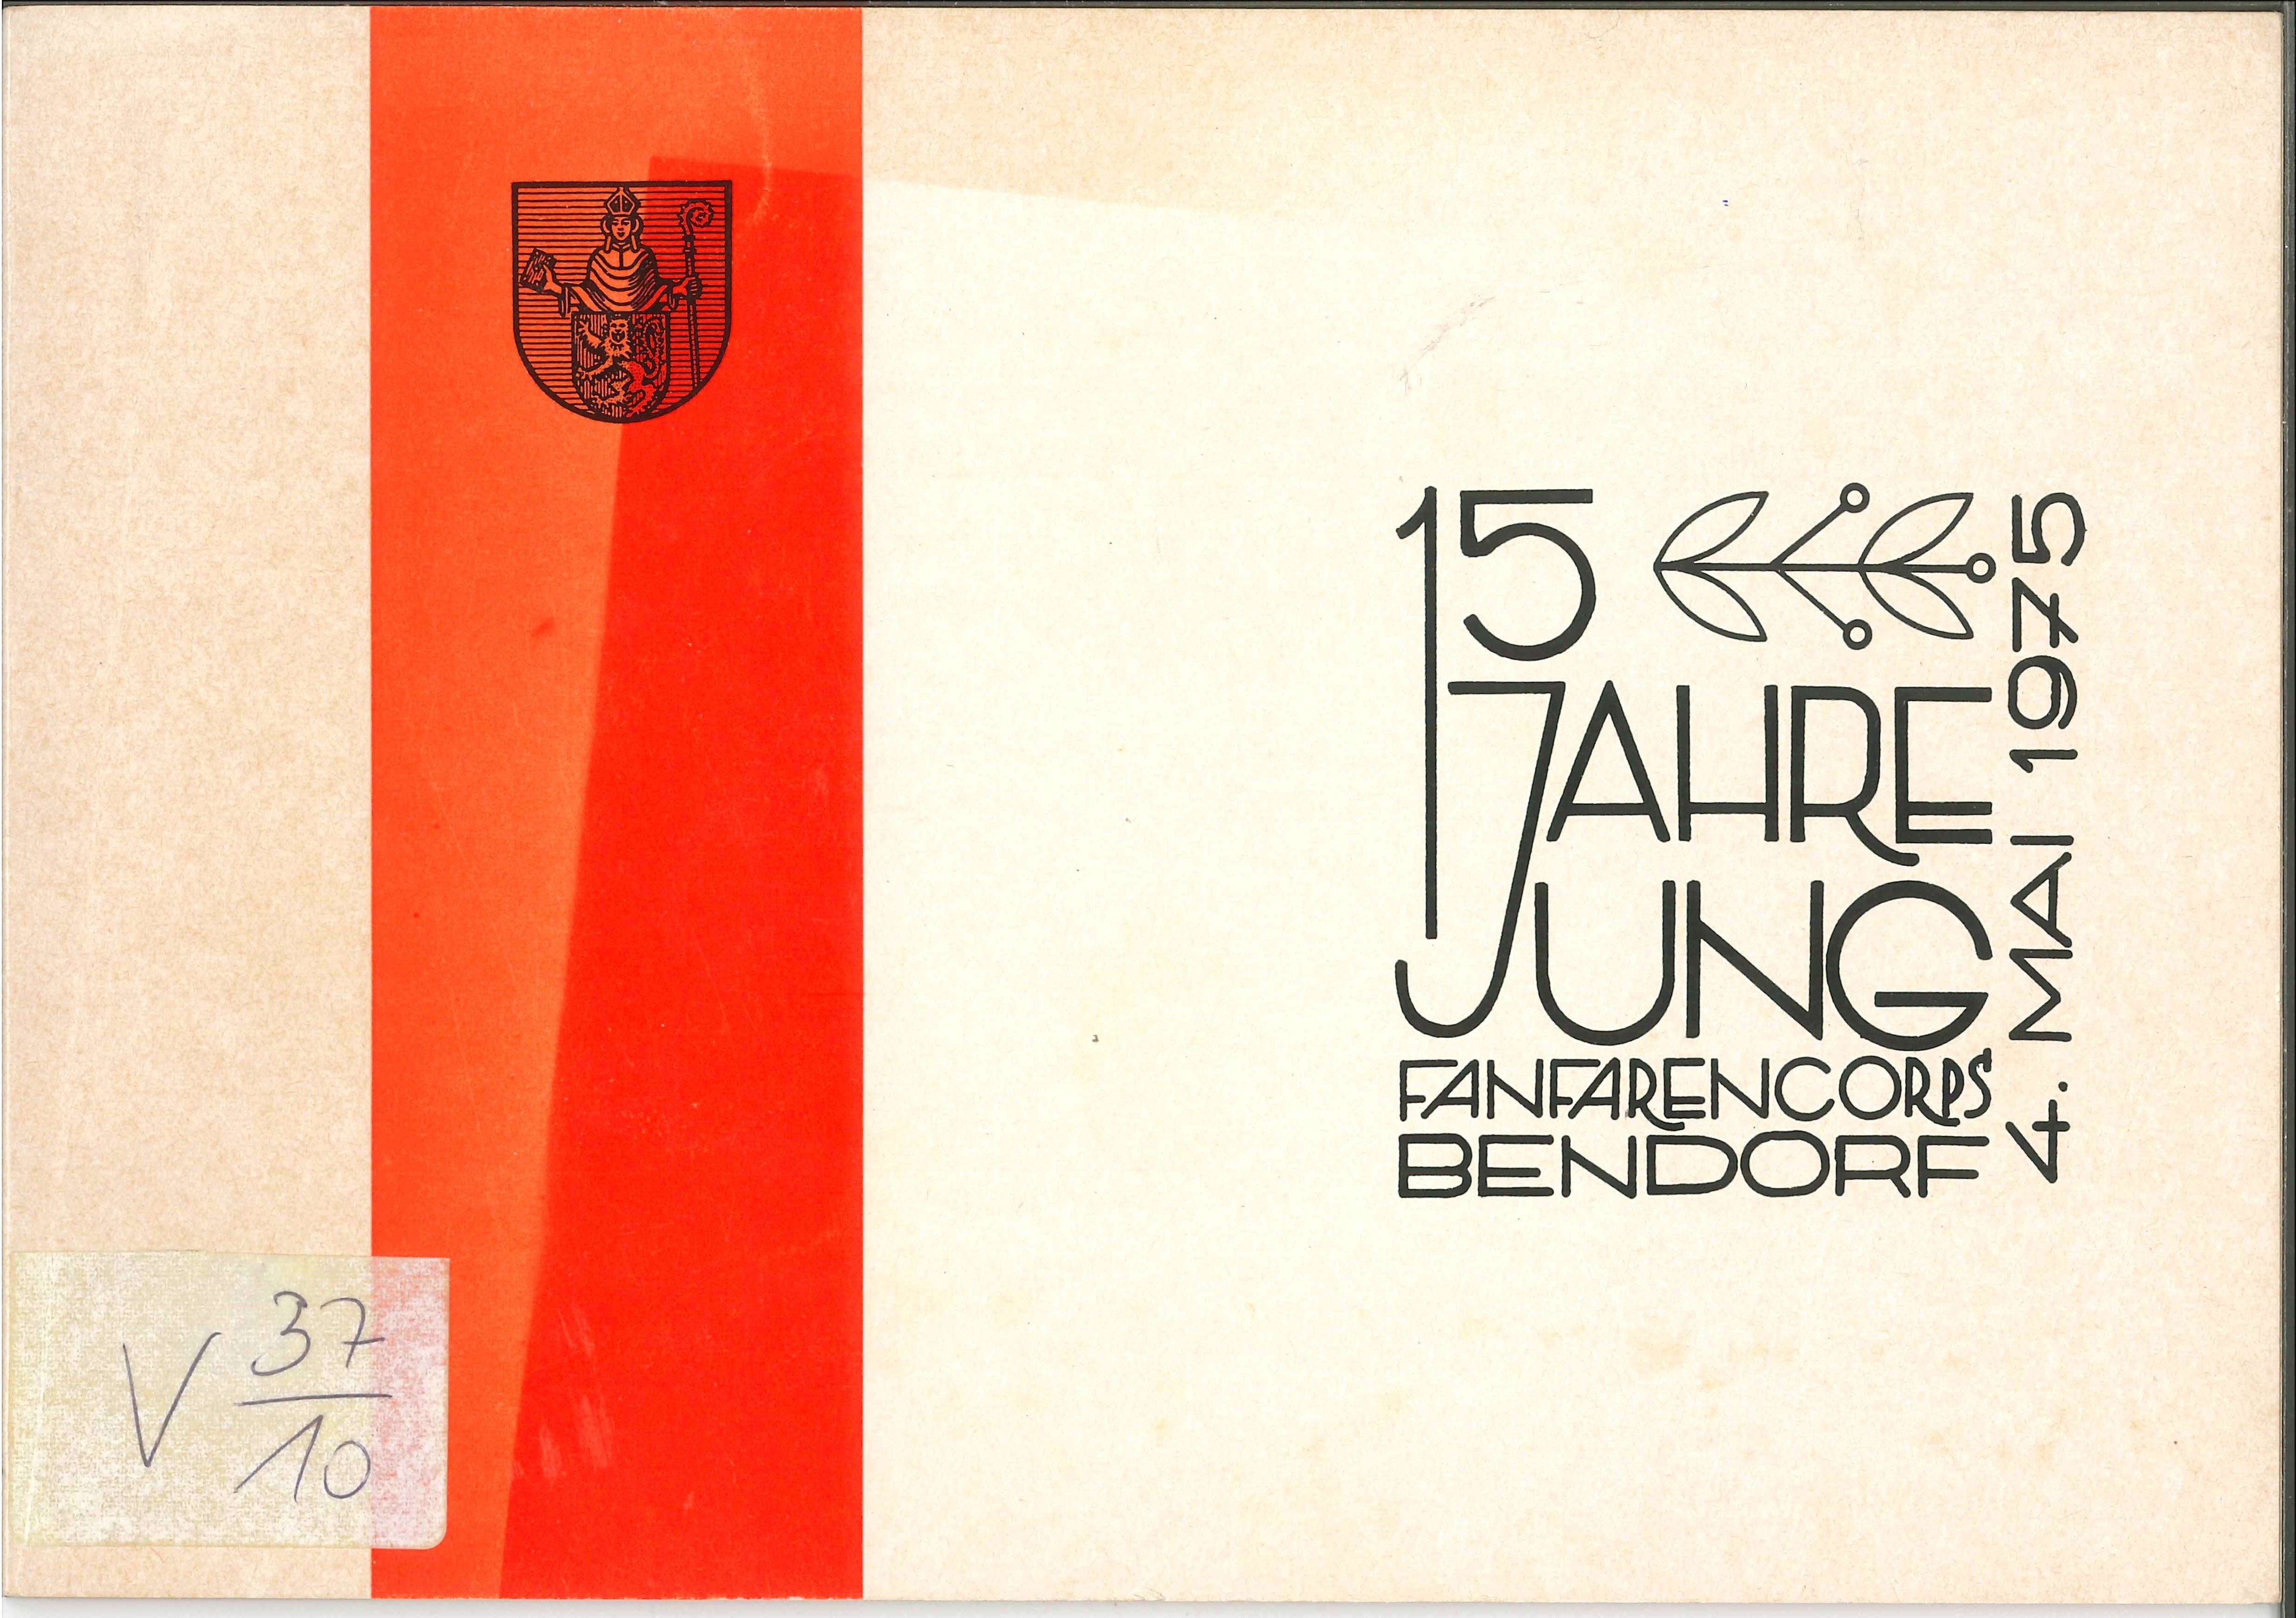 Festschrift Fanfarencorps Bendorf 1975 (Rheinisches Eisenkunstguss-Museum CC BY-NC-SA)